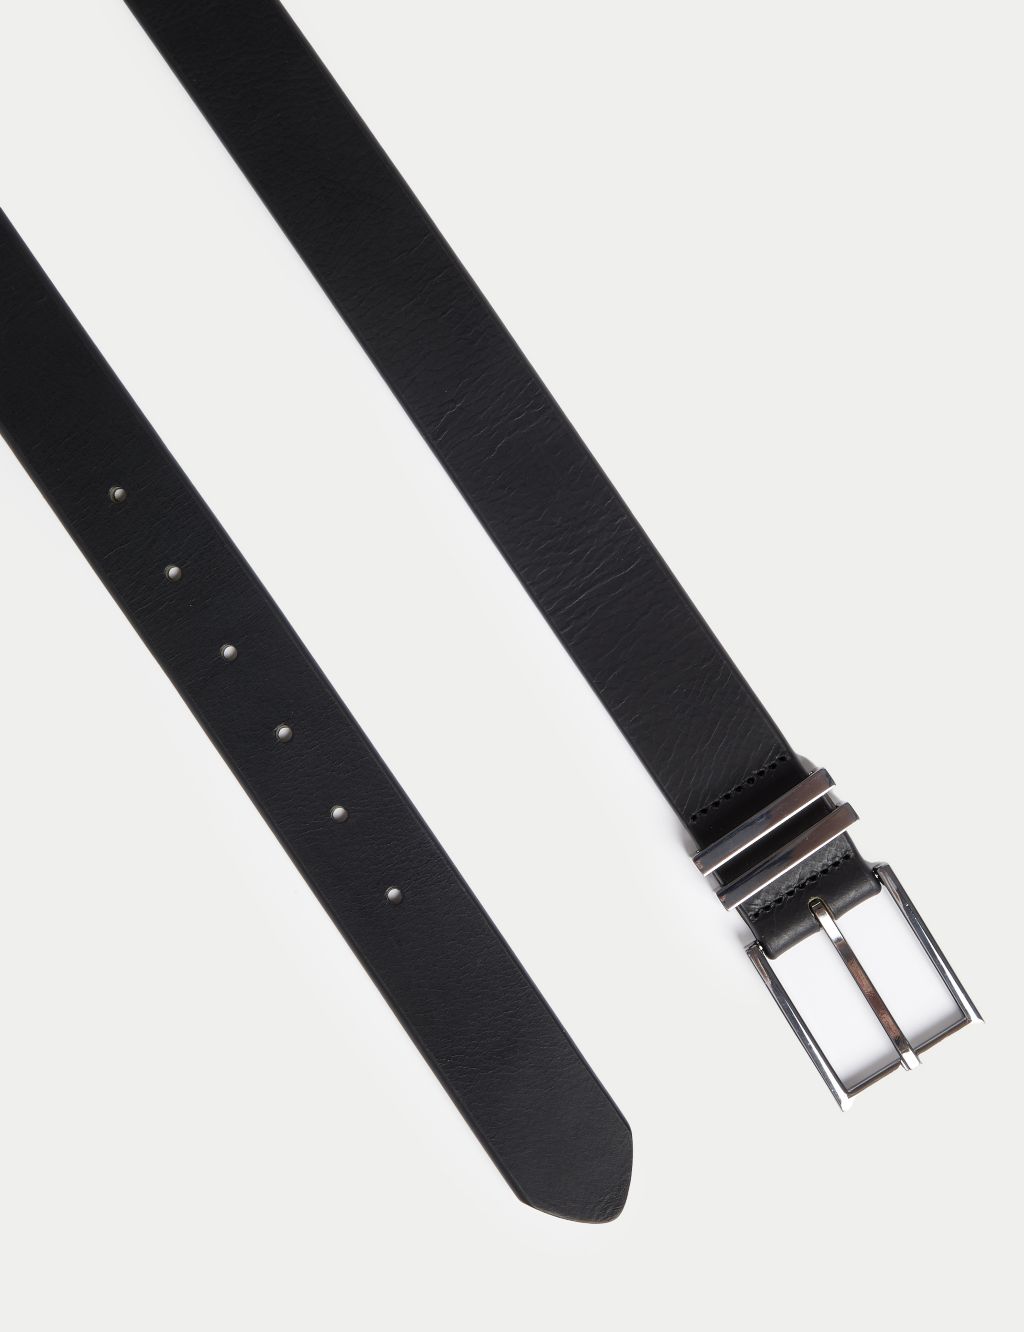 Black Leather Belt image 2